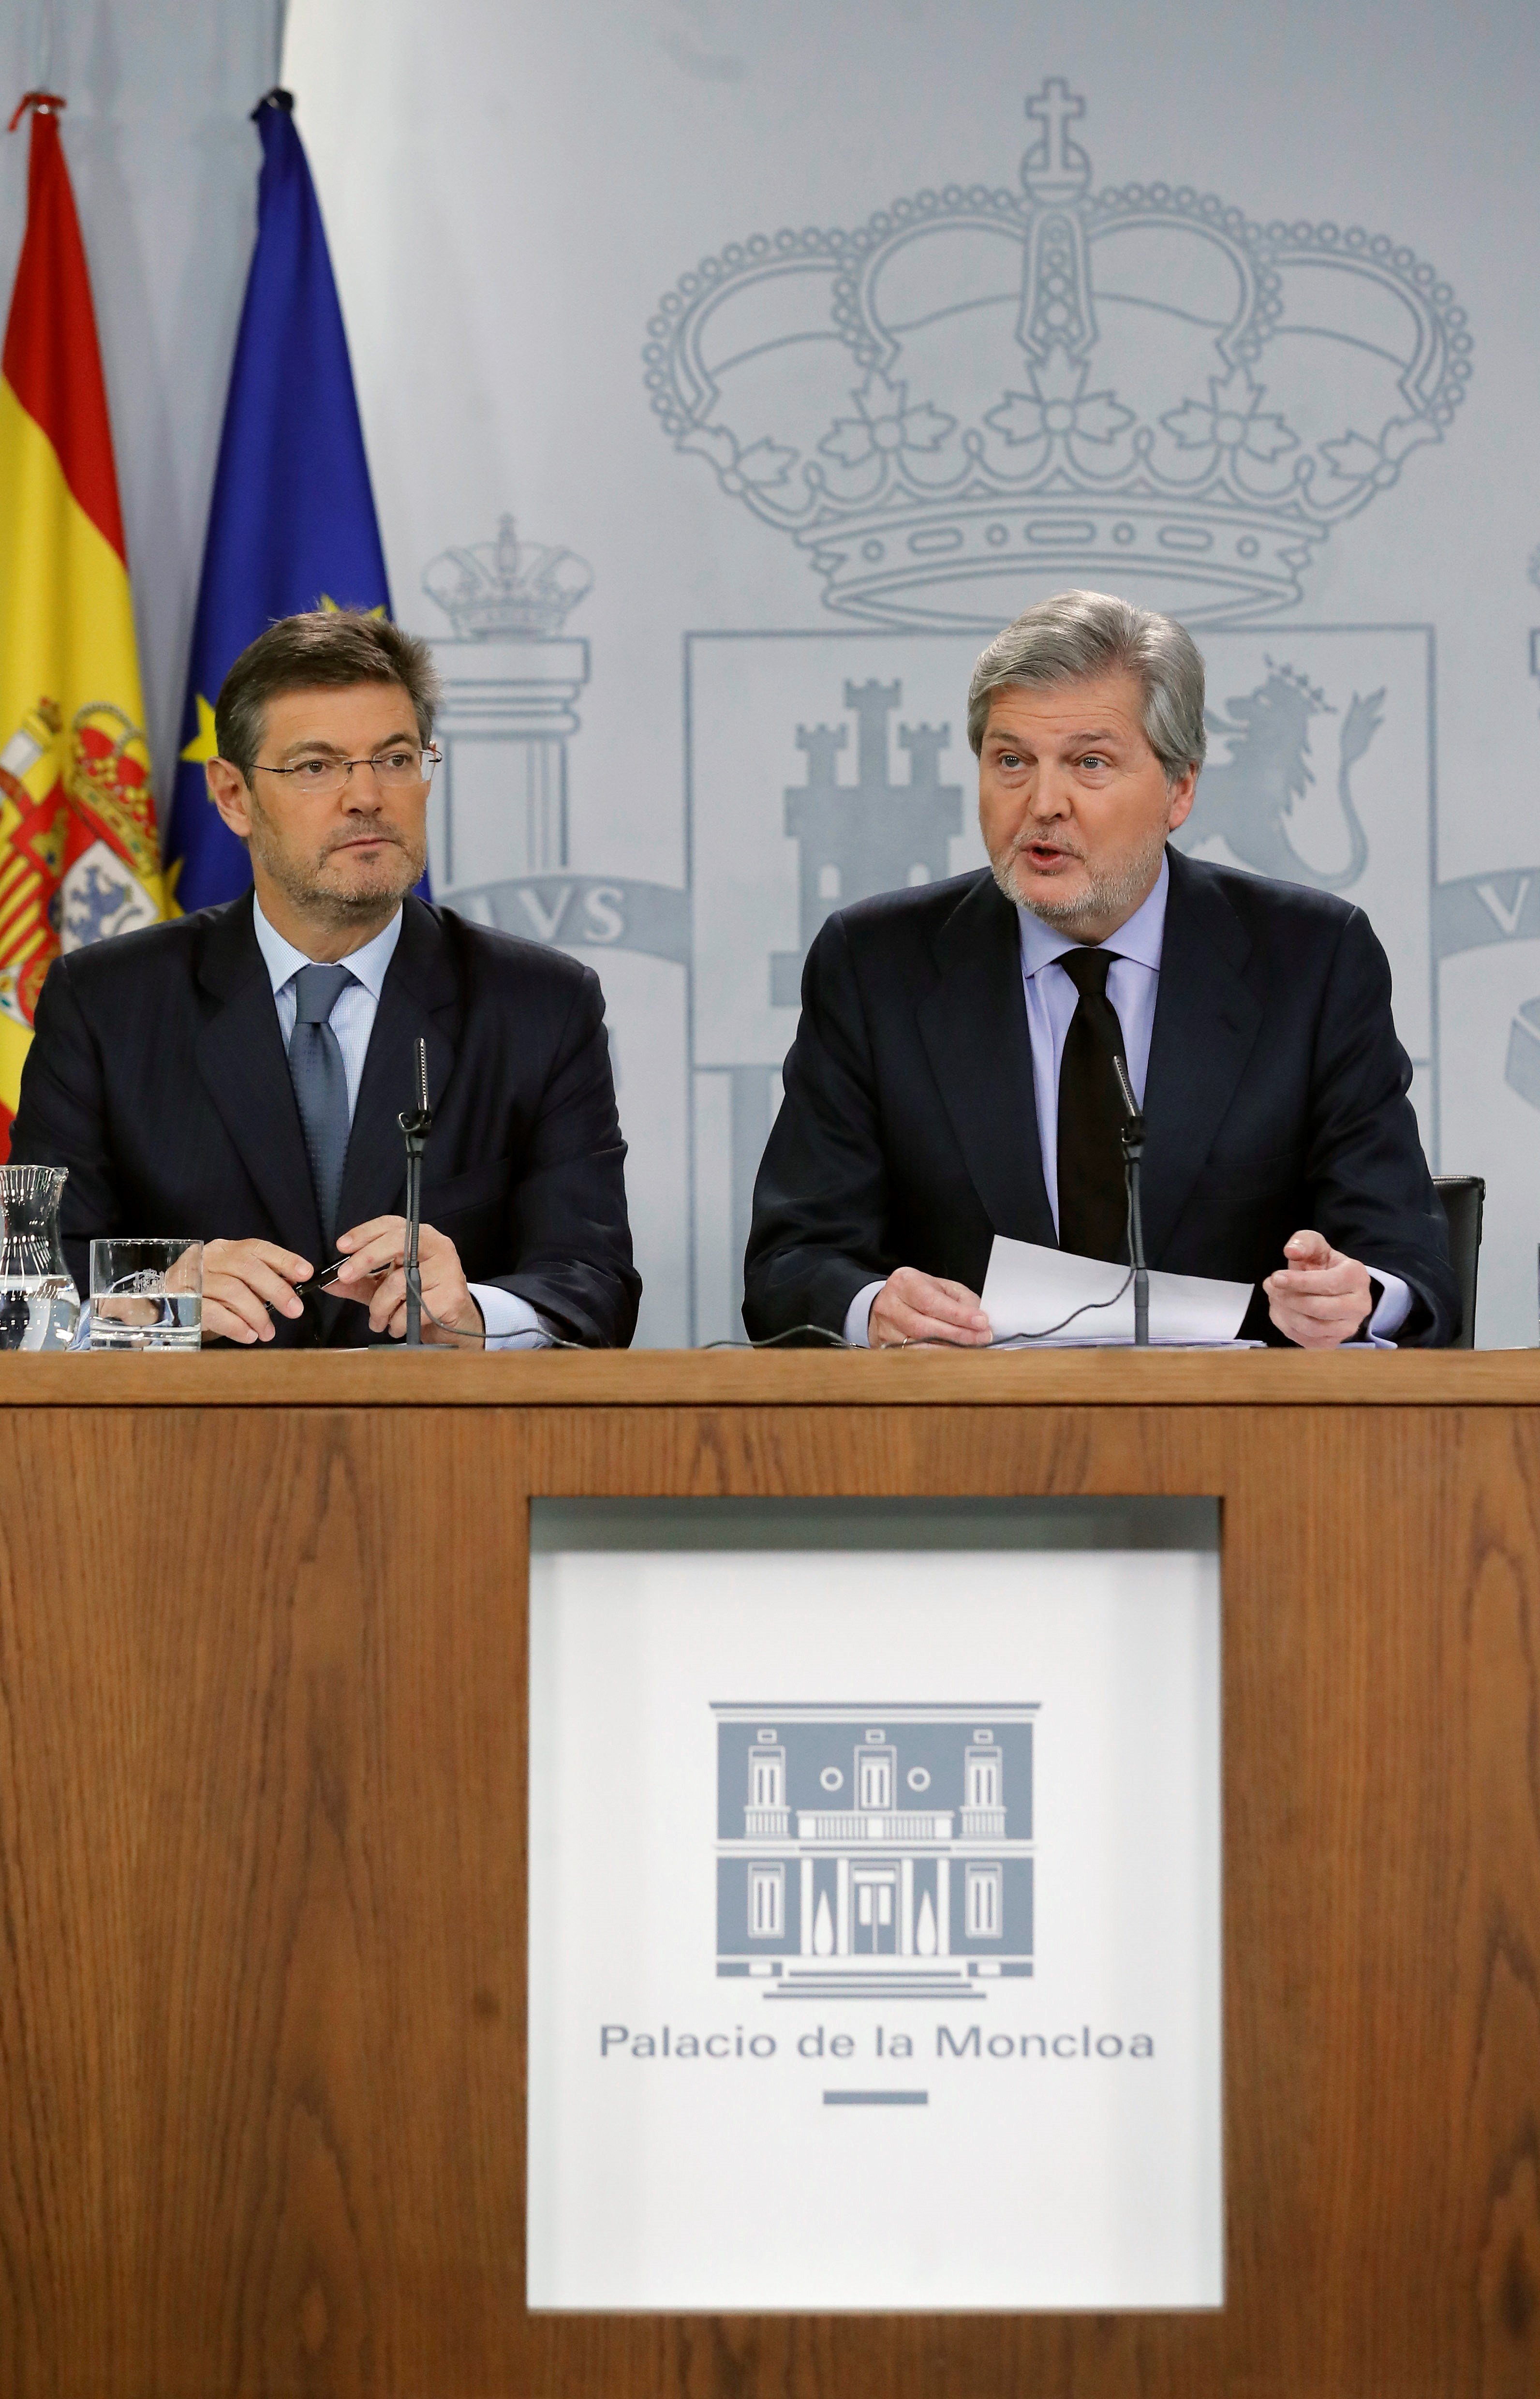 El ministro de Justicia Rafael Catalá (i) y el ministro portavoz Iñigo Méndez de Vigo, durante la rueda de prensa celebrada en el Palacio de la Moncloa tras la reunión del consejo de ministros